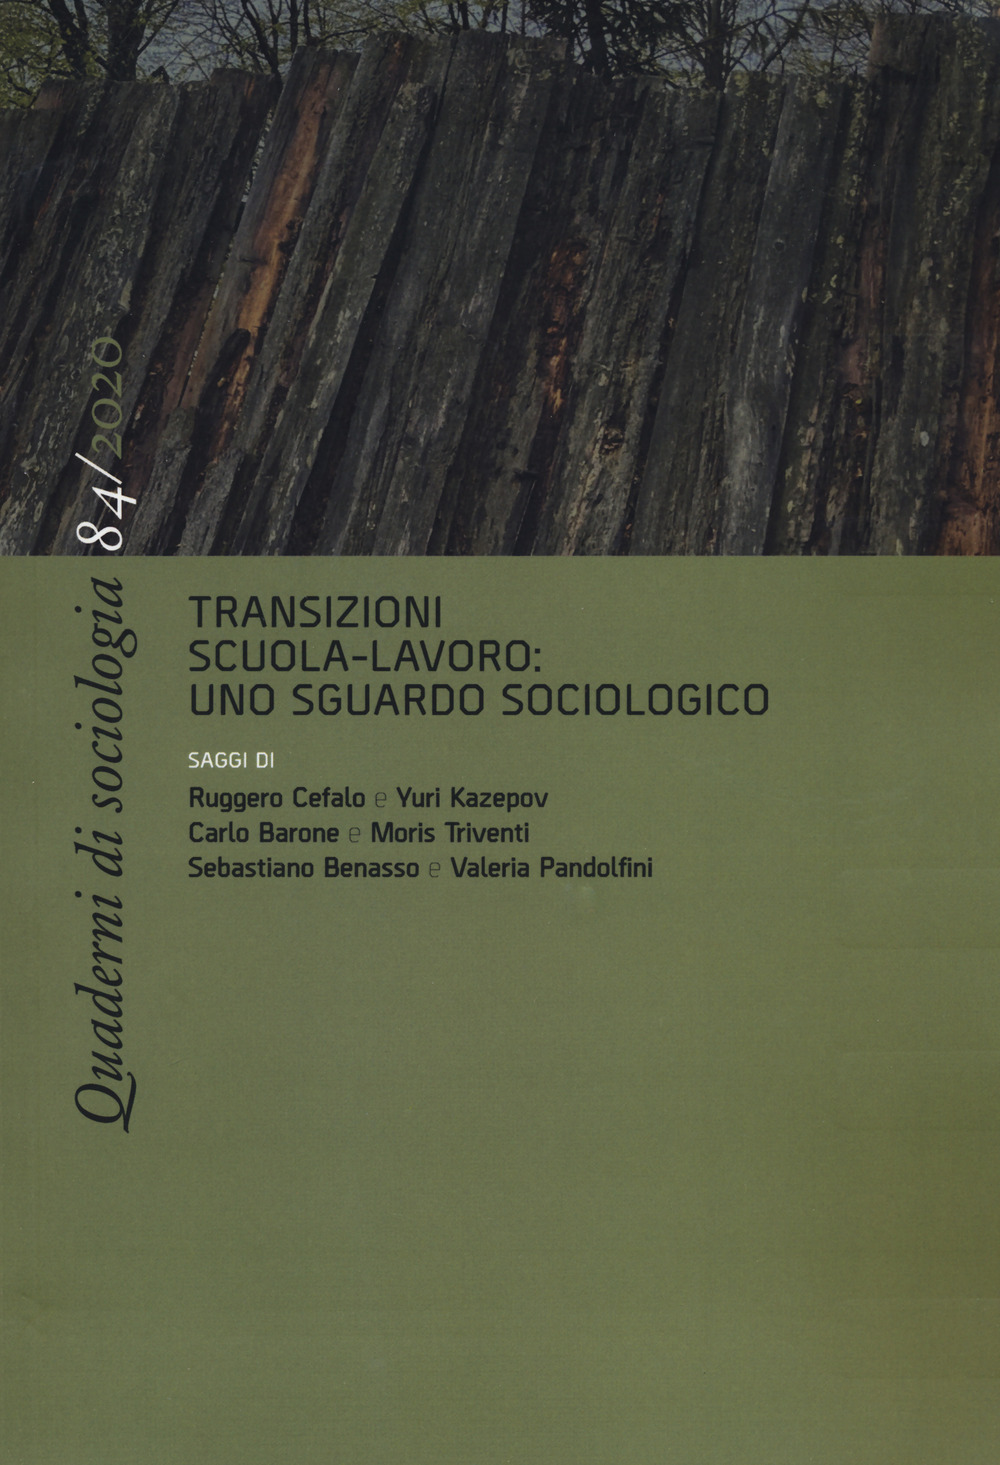 Quaderni di sociologia (2020). Vol. 84: Transizioni scuola-lavoro: uno sguardo sociologico